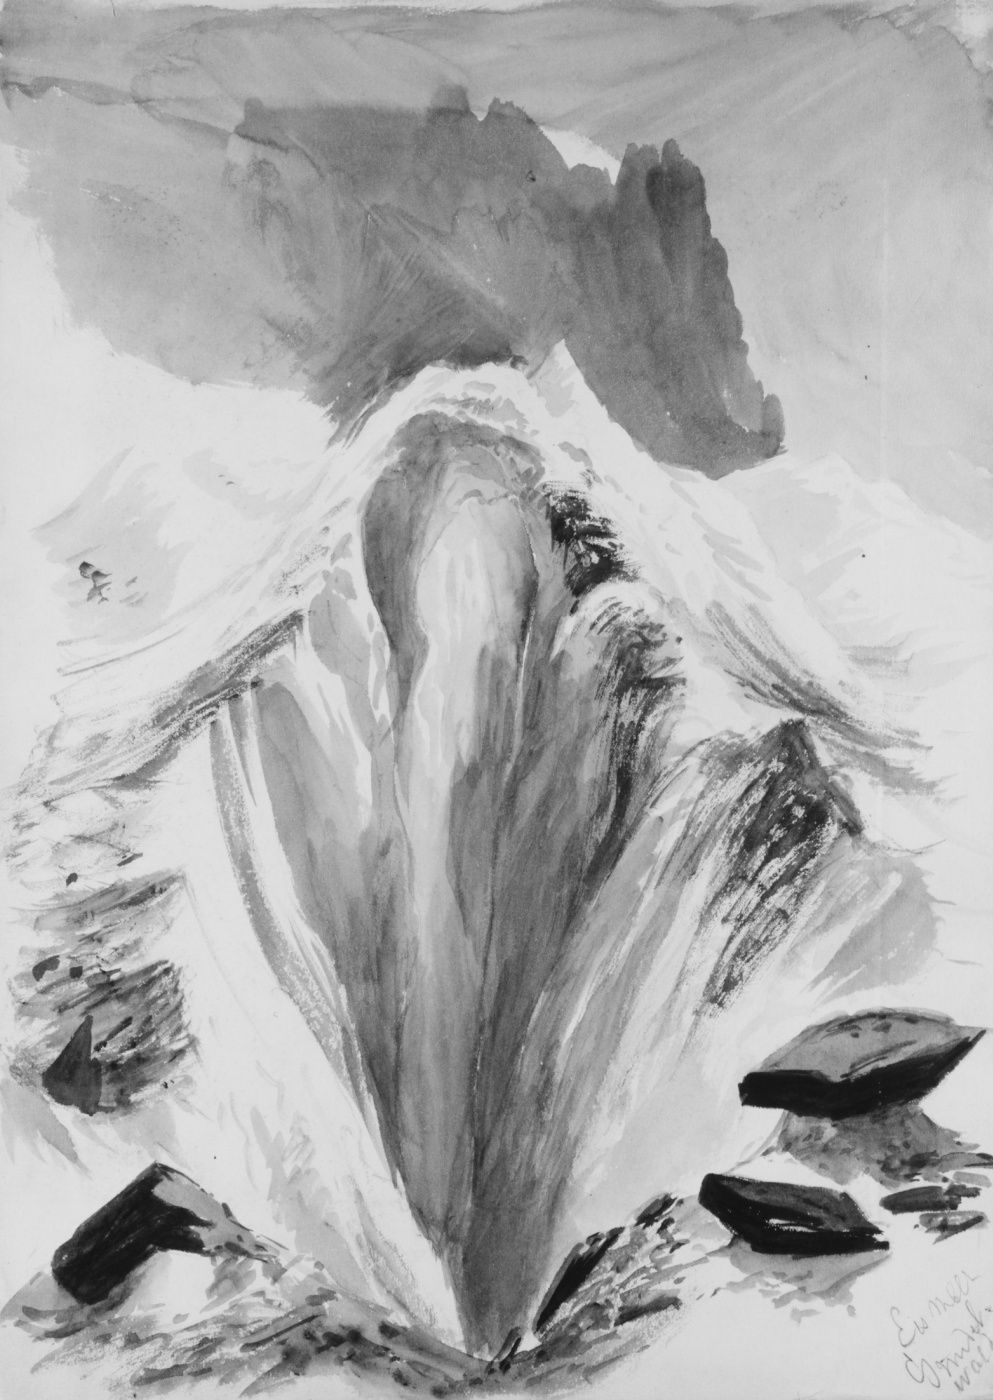 John Singer Sargent. The Grindelwald Glacier